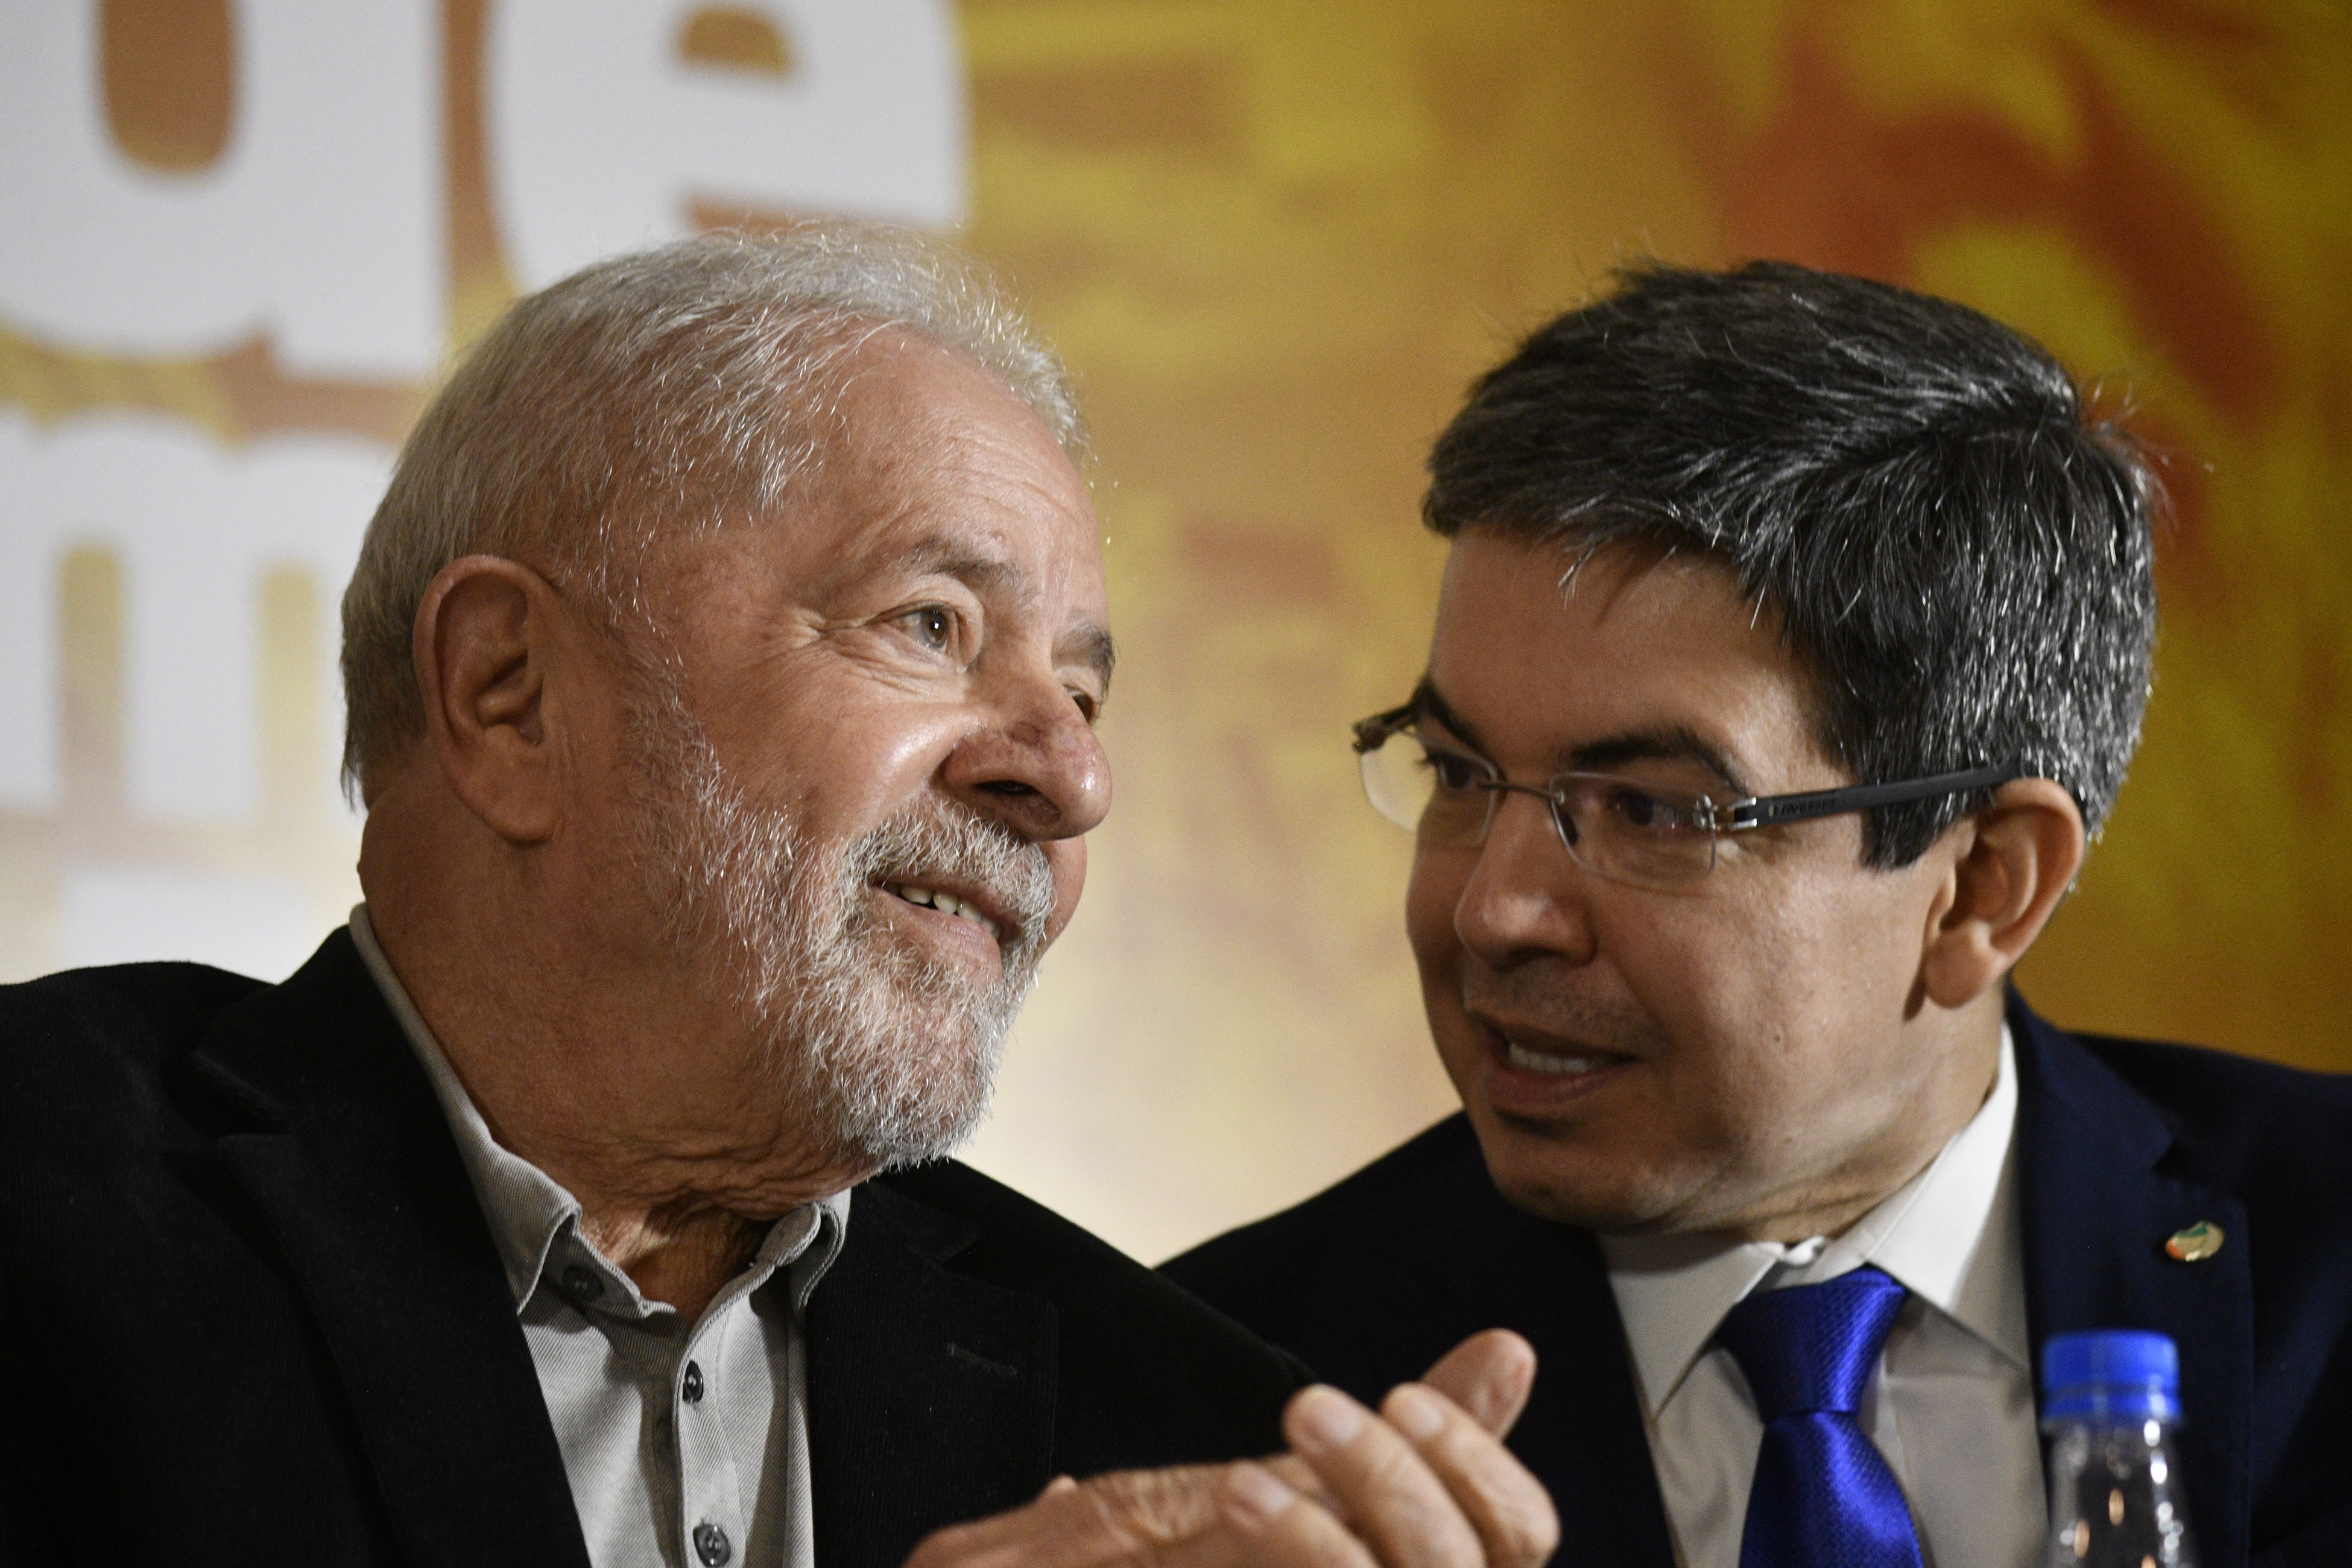 O presidente Lula e o senador Randolfe Rodrigues, líder do governo no Congresso - Mateus Bonomi/Agif/Estadão Conteúdo